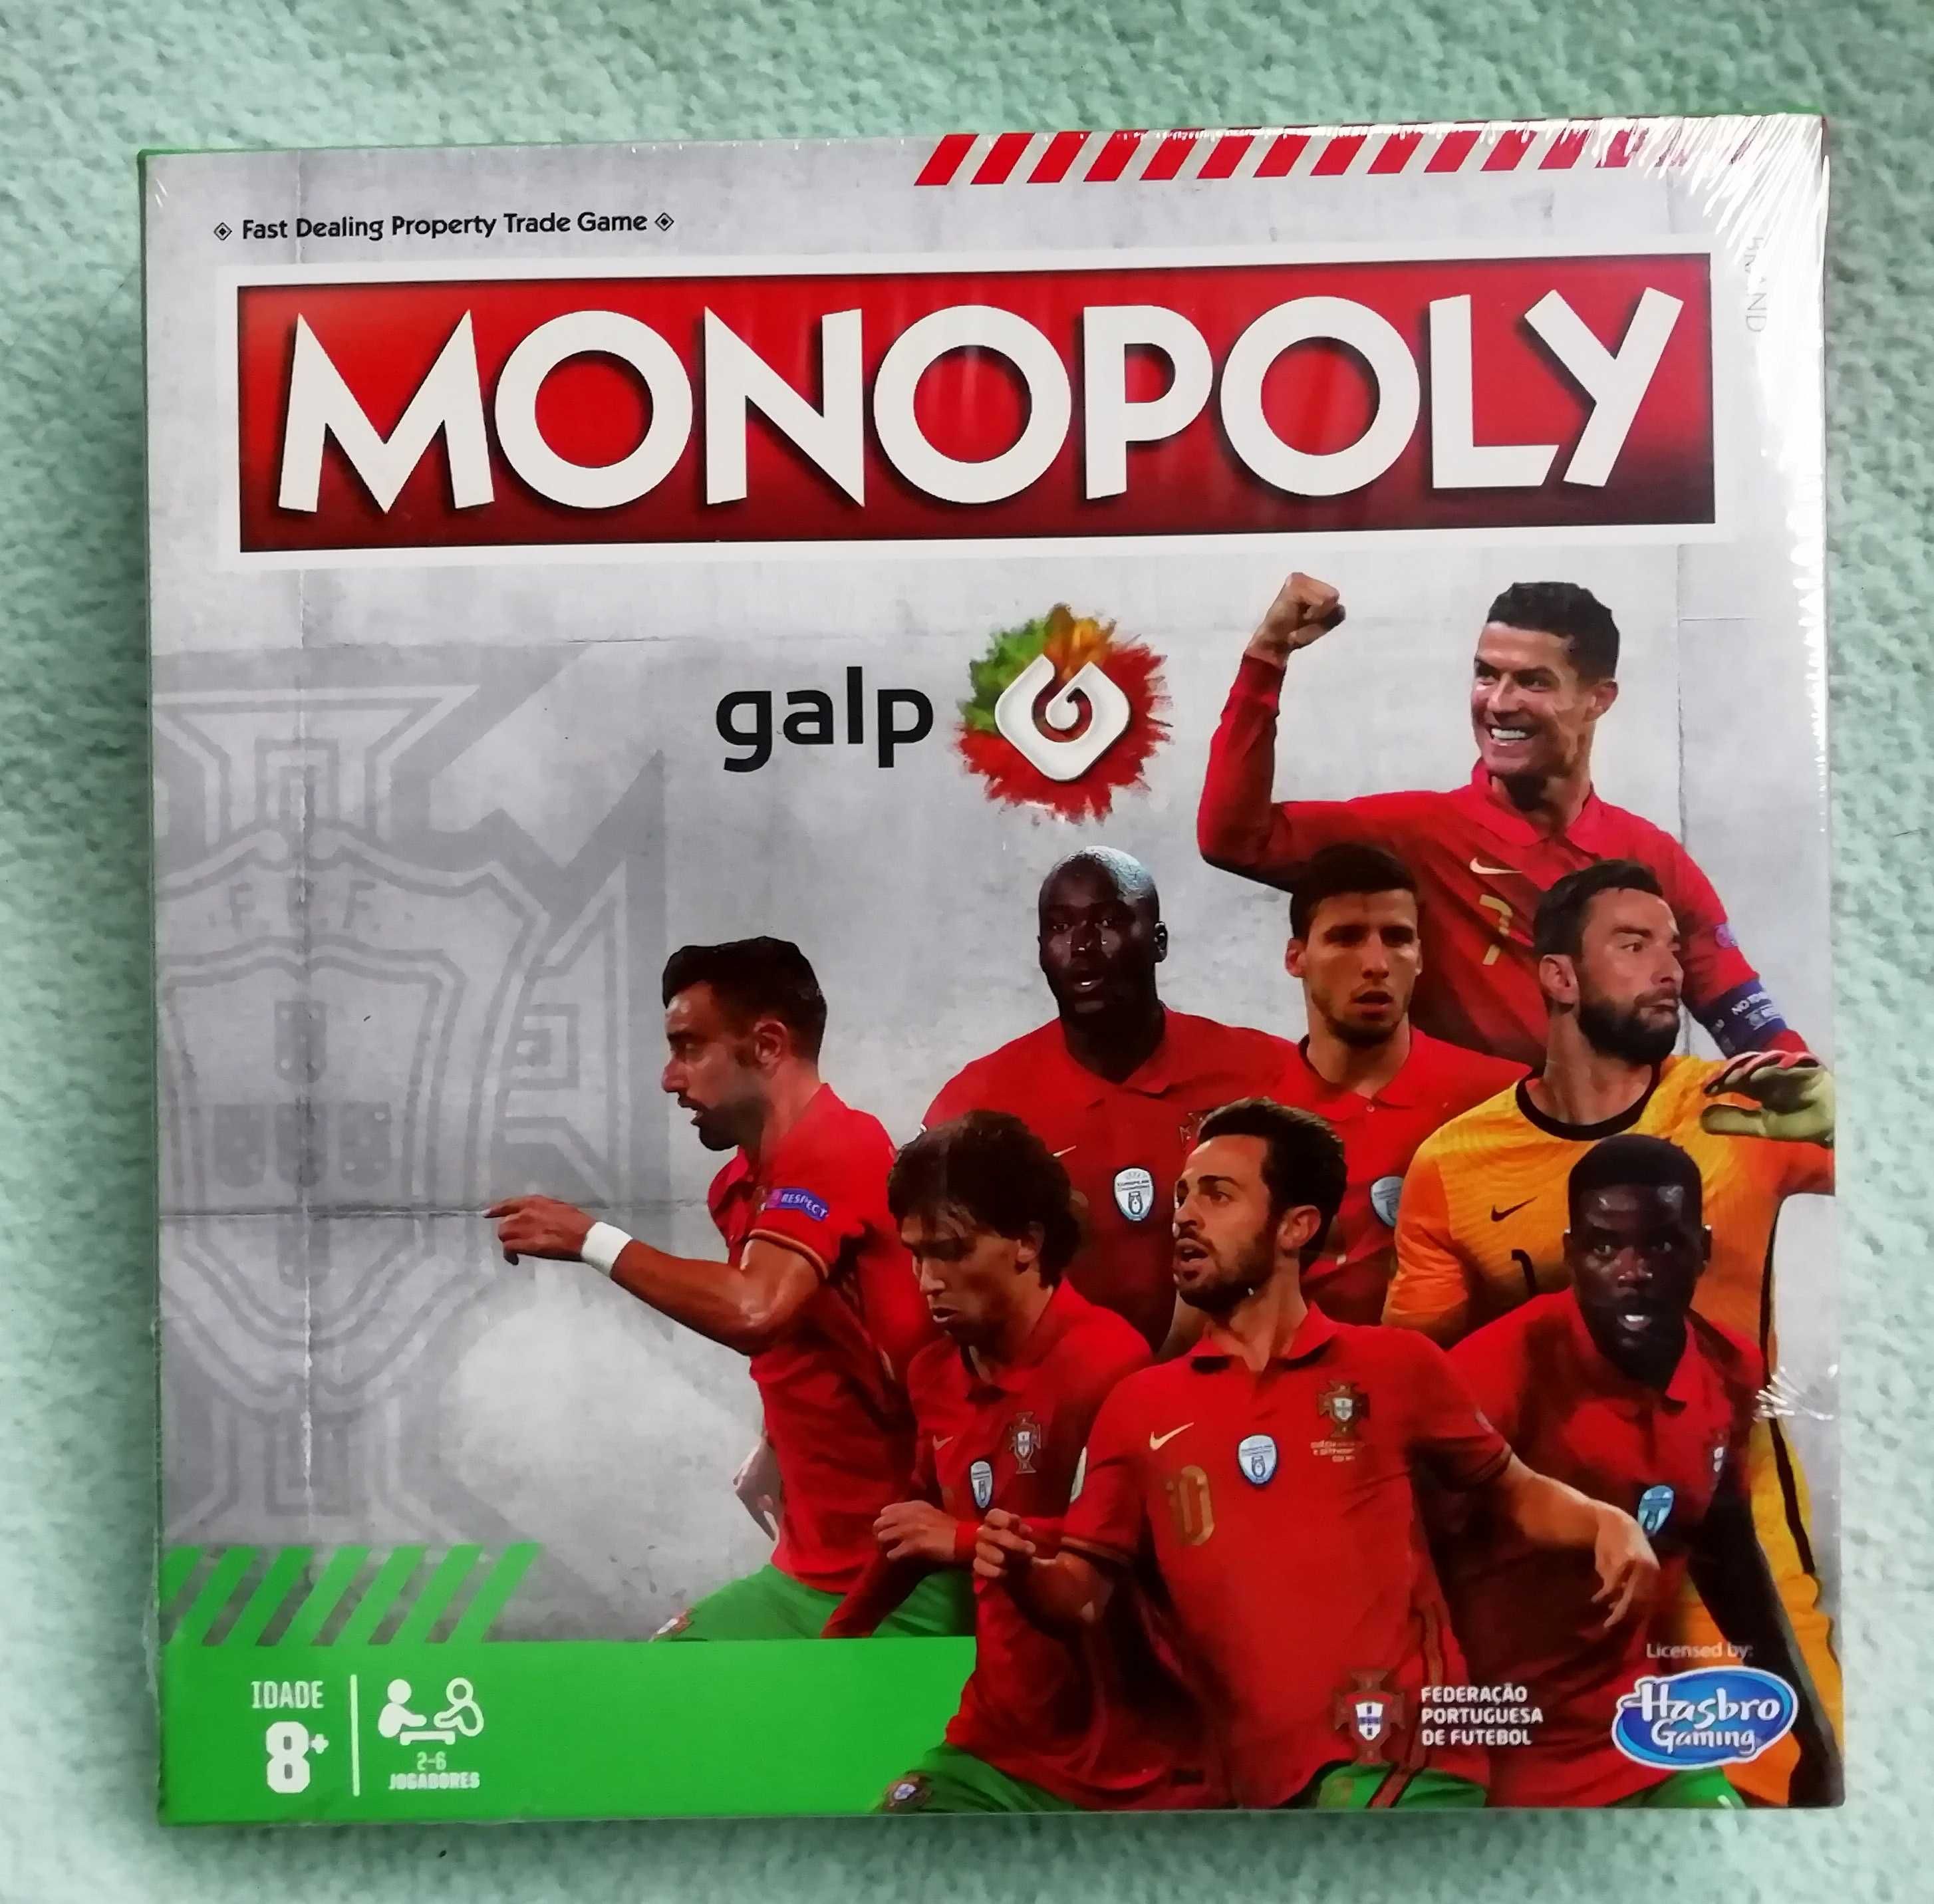 Jogo de Monopólio da Seleção Nacional - Monopoly Galp